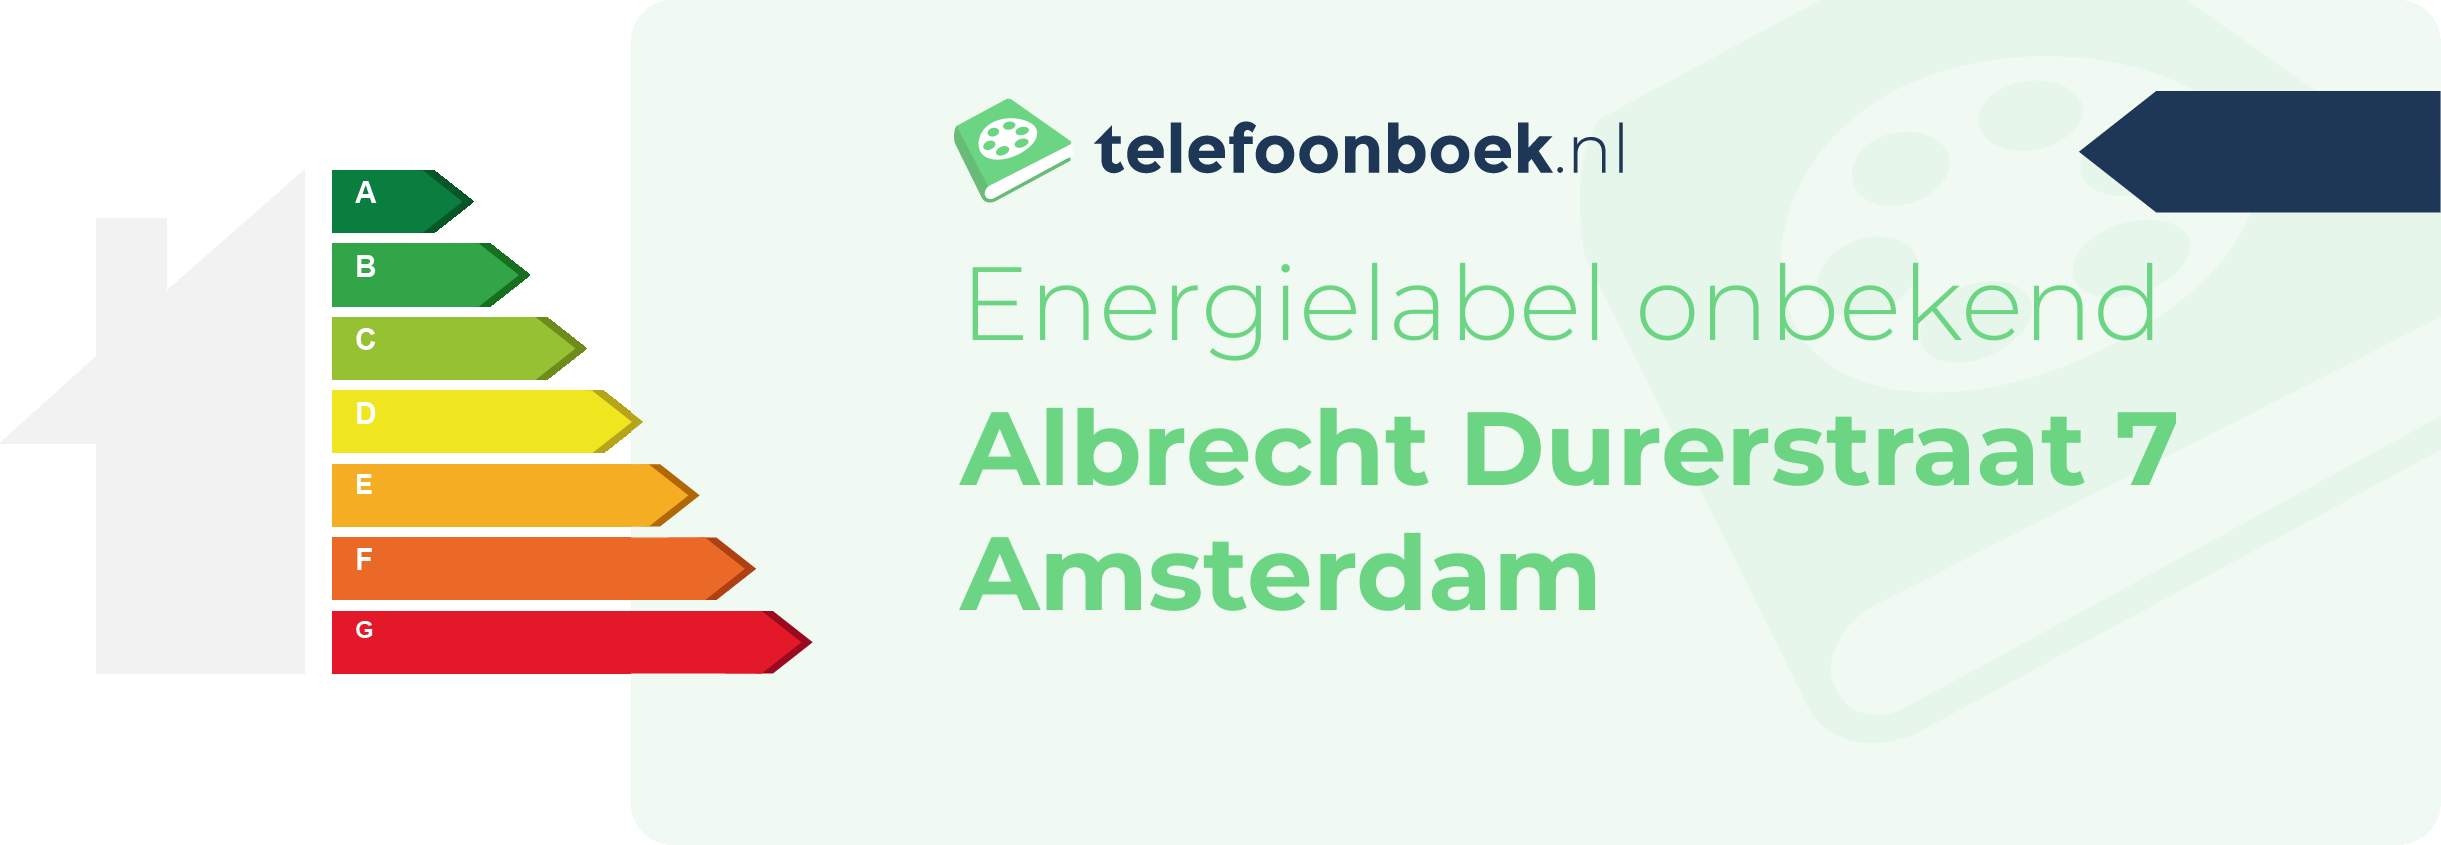 Energielabel Albrecht Durerstraat 7 Amsterdam